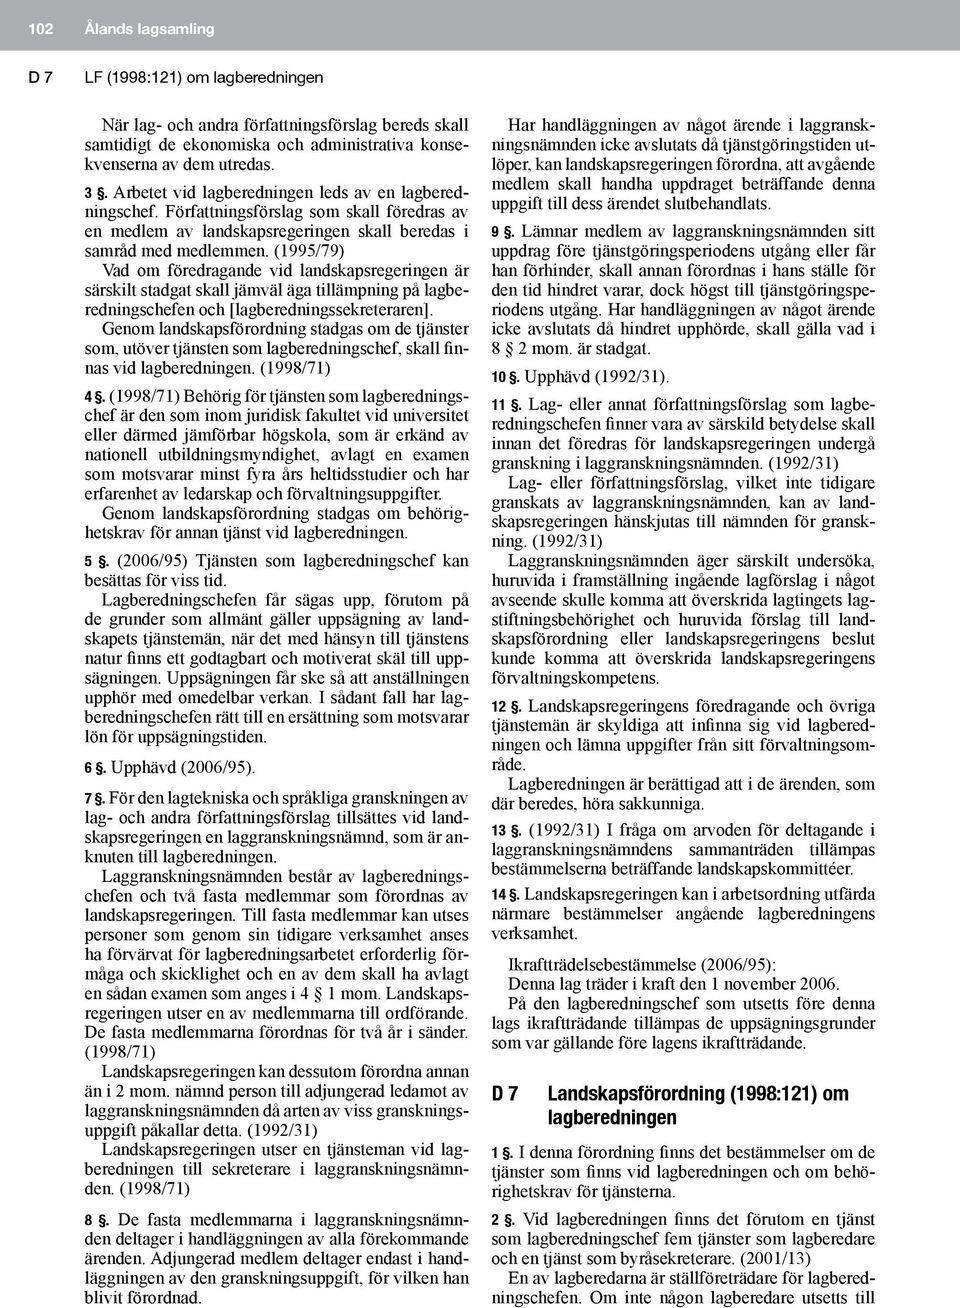 (1995/79) Vad om föredragande vid landskapsregeringen är särskilt stadgat skall jämväl äga tillämpning på lagberedningschefen och [lagberedningssekreteraren].